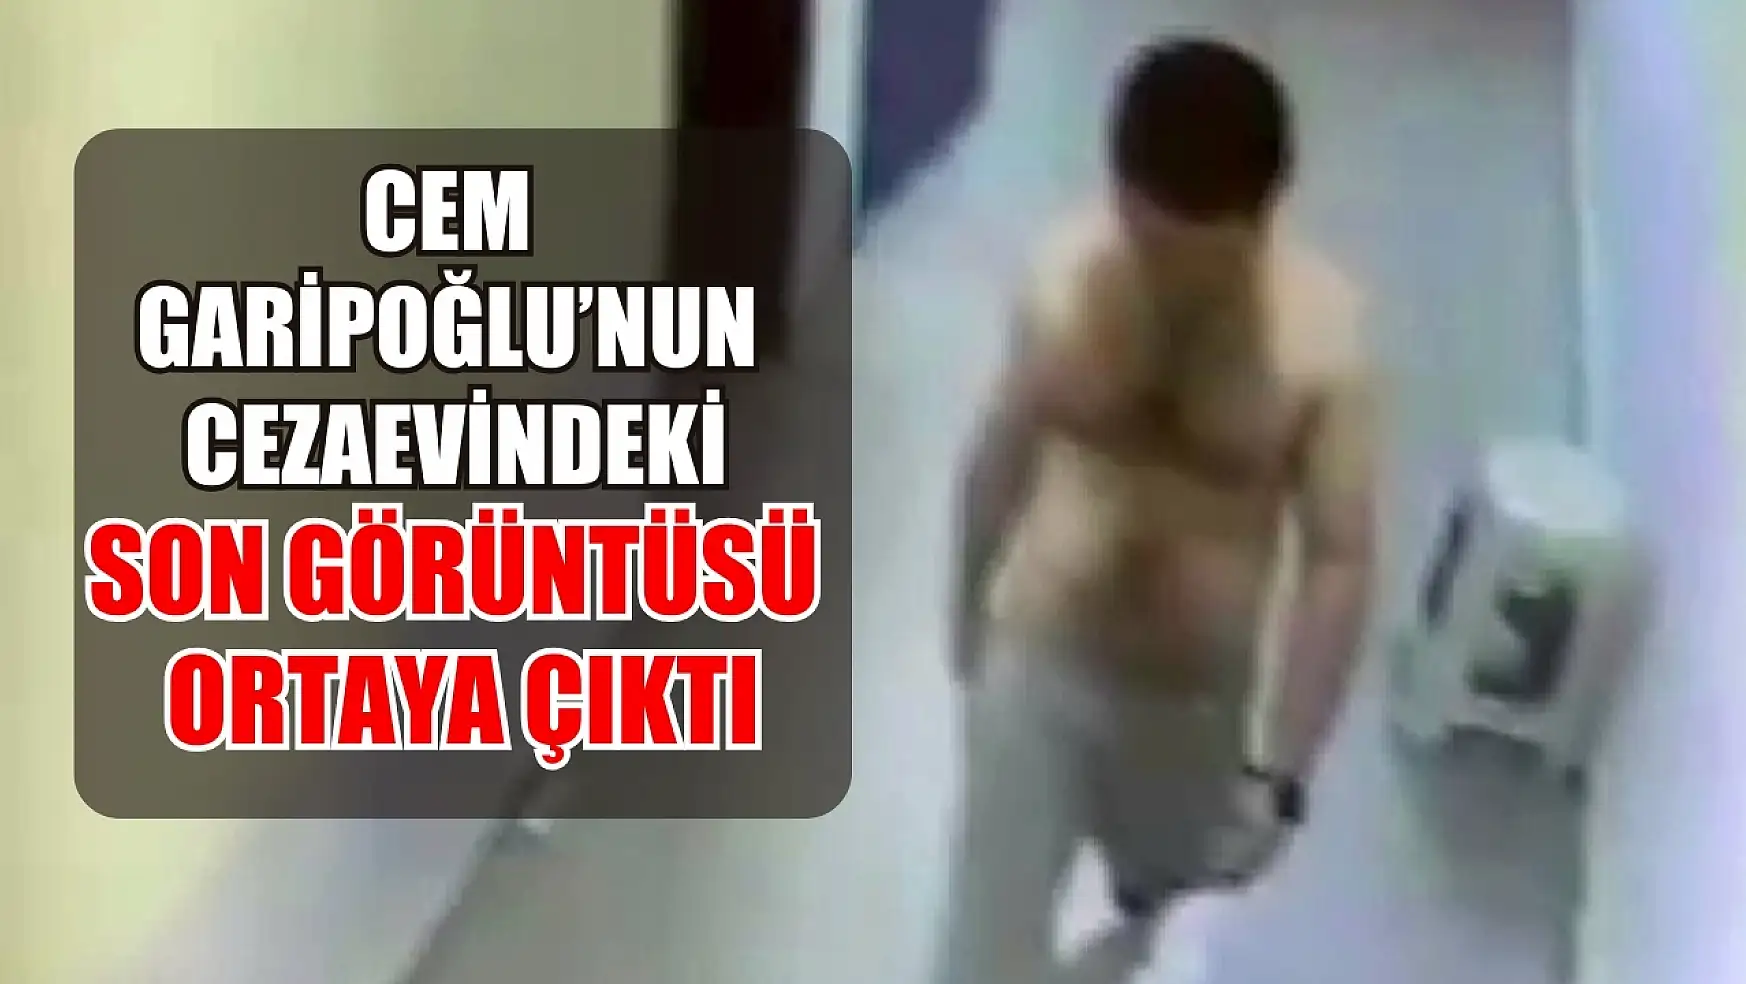 Cem Garipoğlu'nun cezaevindeki son görüntüsü ortaya çıktı